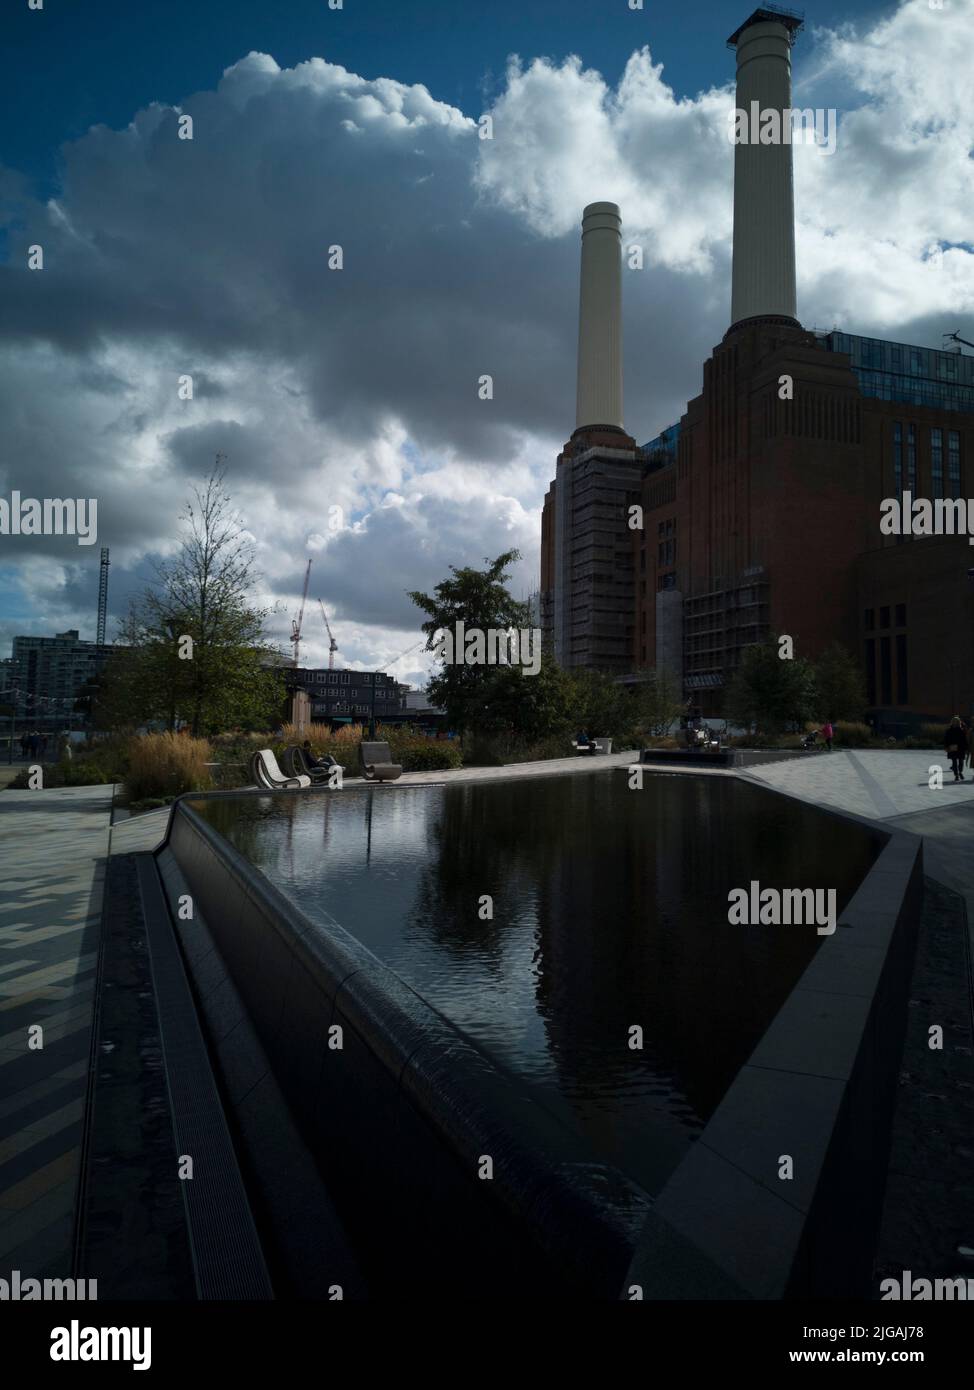 Alrededor de Battersea Power Station, Londres, Reino Unido, 2021 de octubre. Fuente decorativa con las torres de la central eléctrica Battersea detrás. Foto de stock